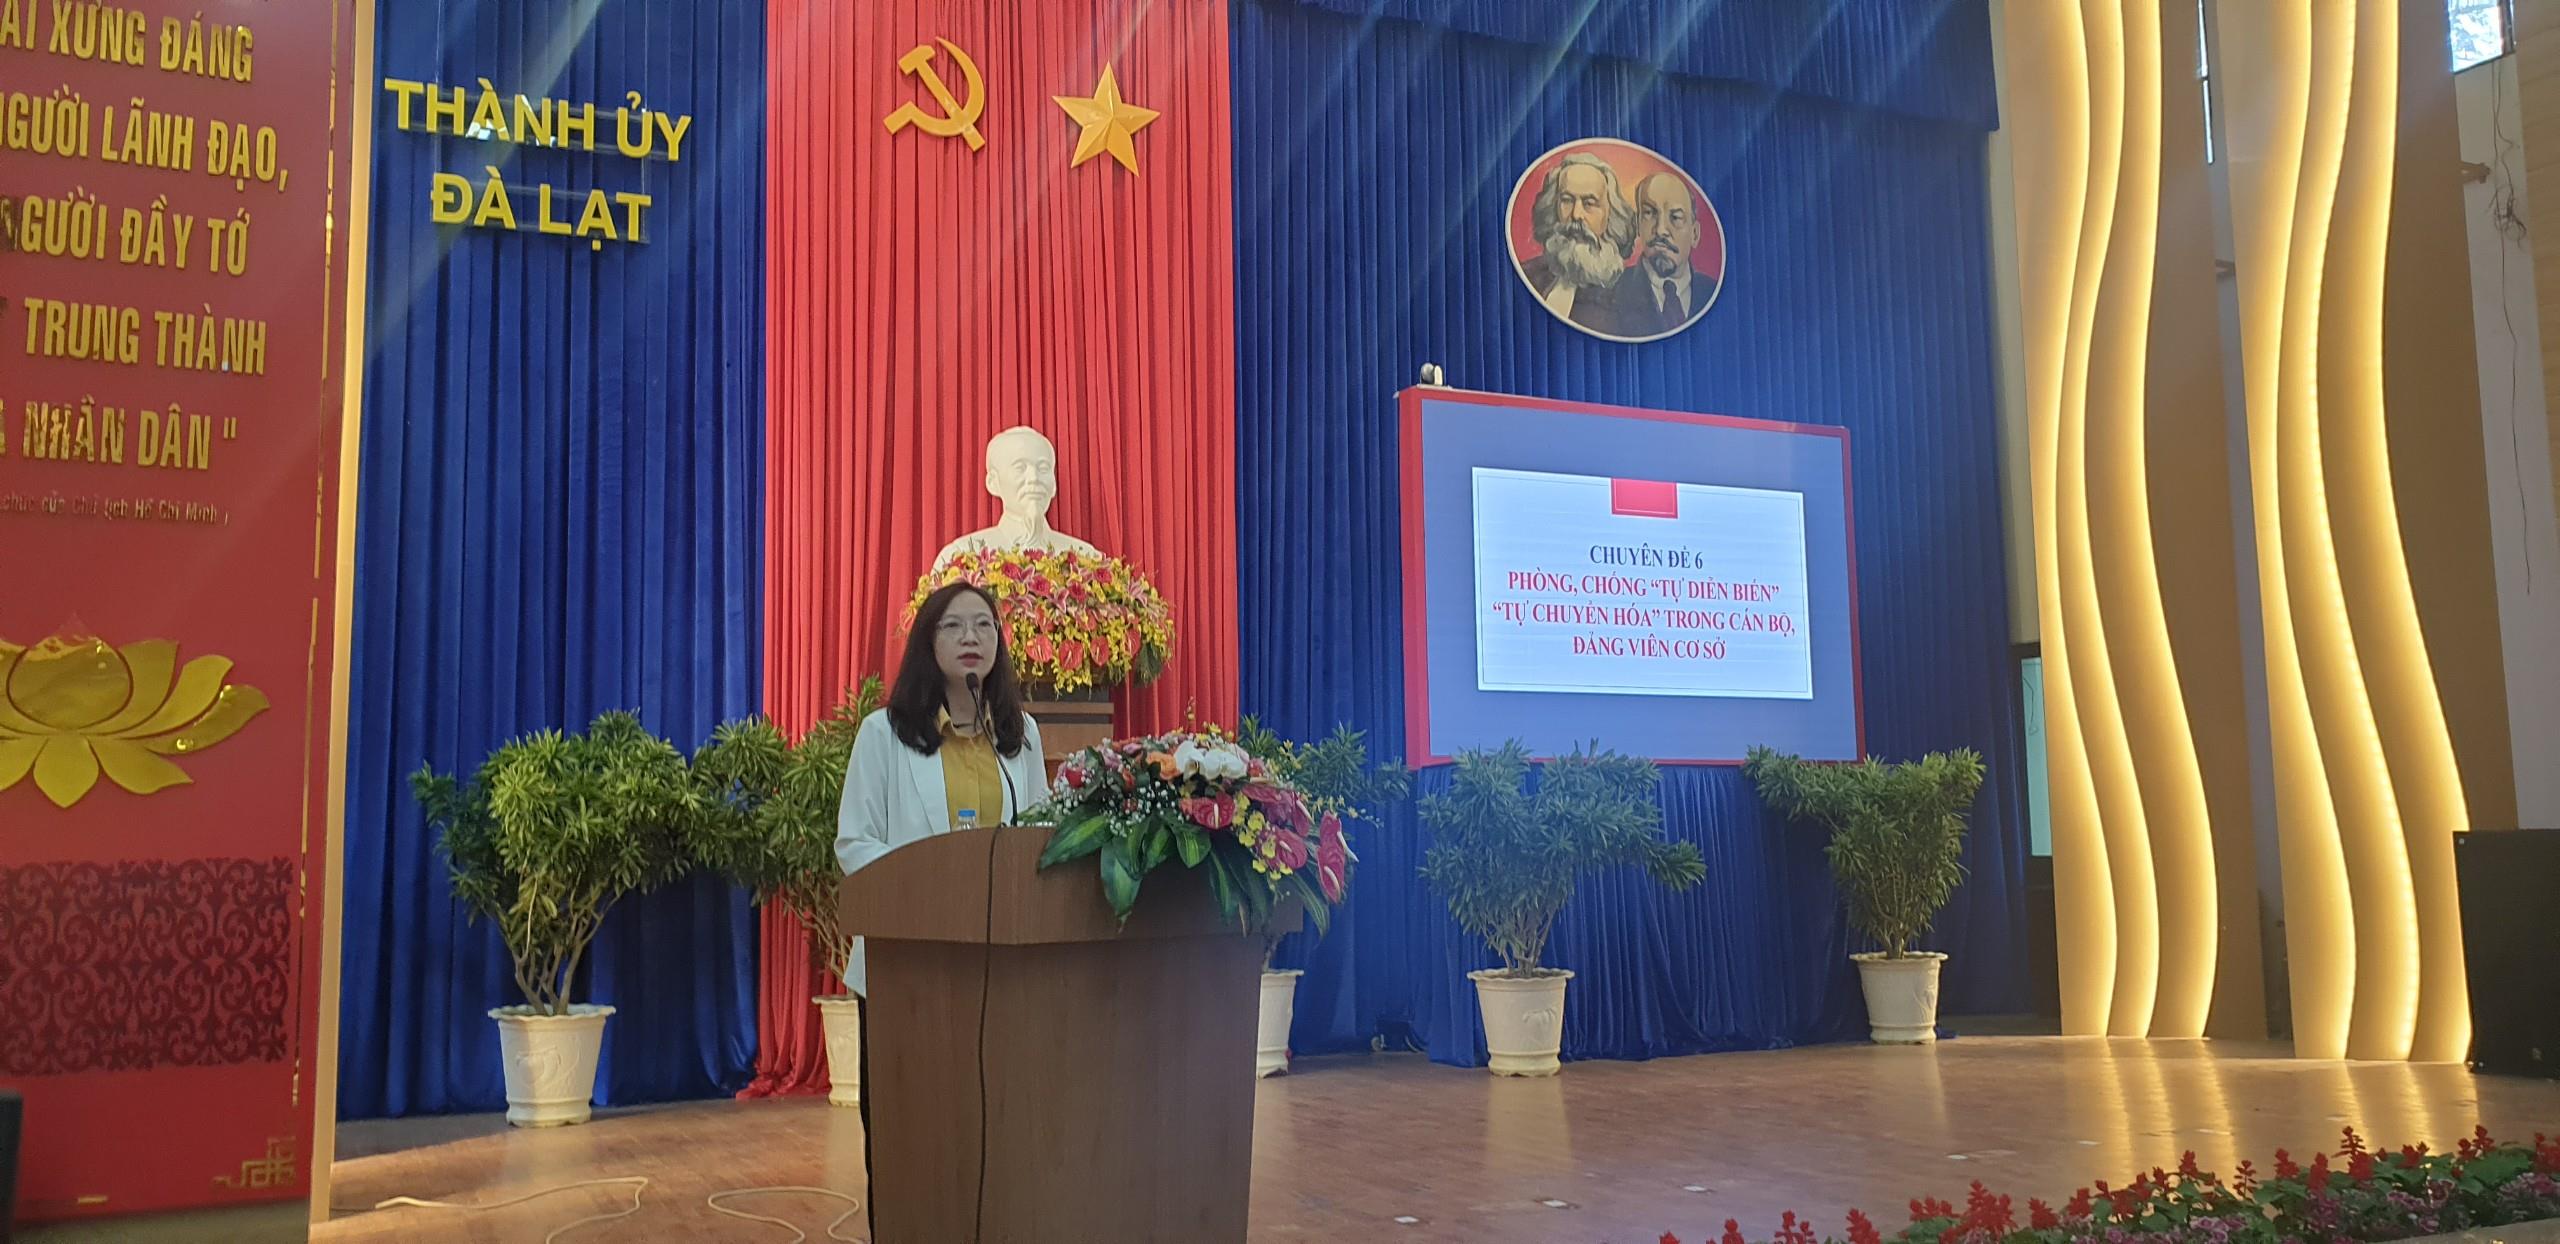 Đồng chí Lê Thị Hồng Phúc - Phó Trưởng ban Tuyên giáo Thành ủy báo cáo chuyên đề tại hội nghị